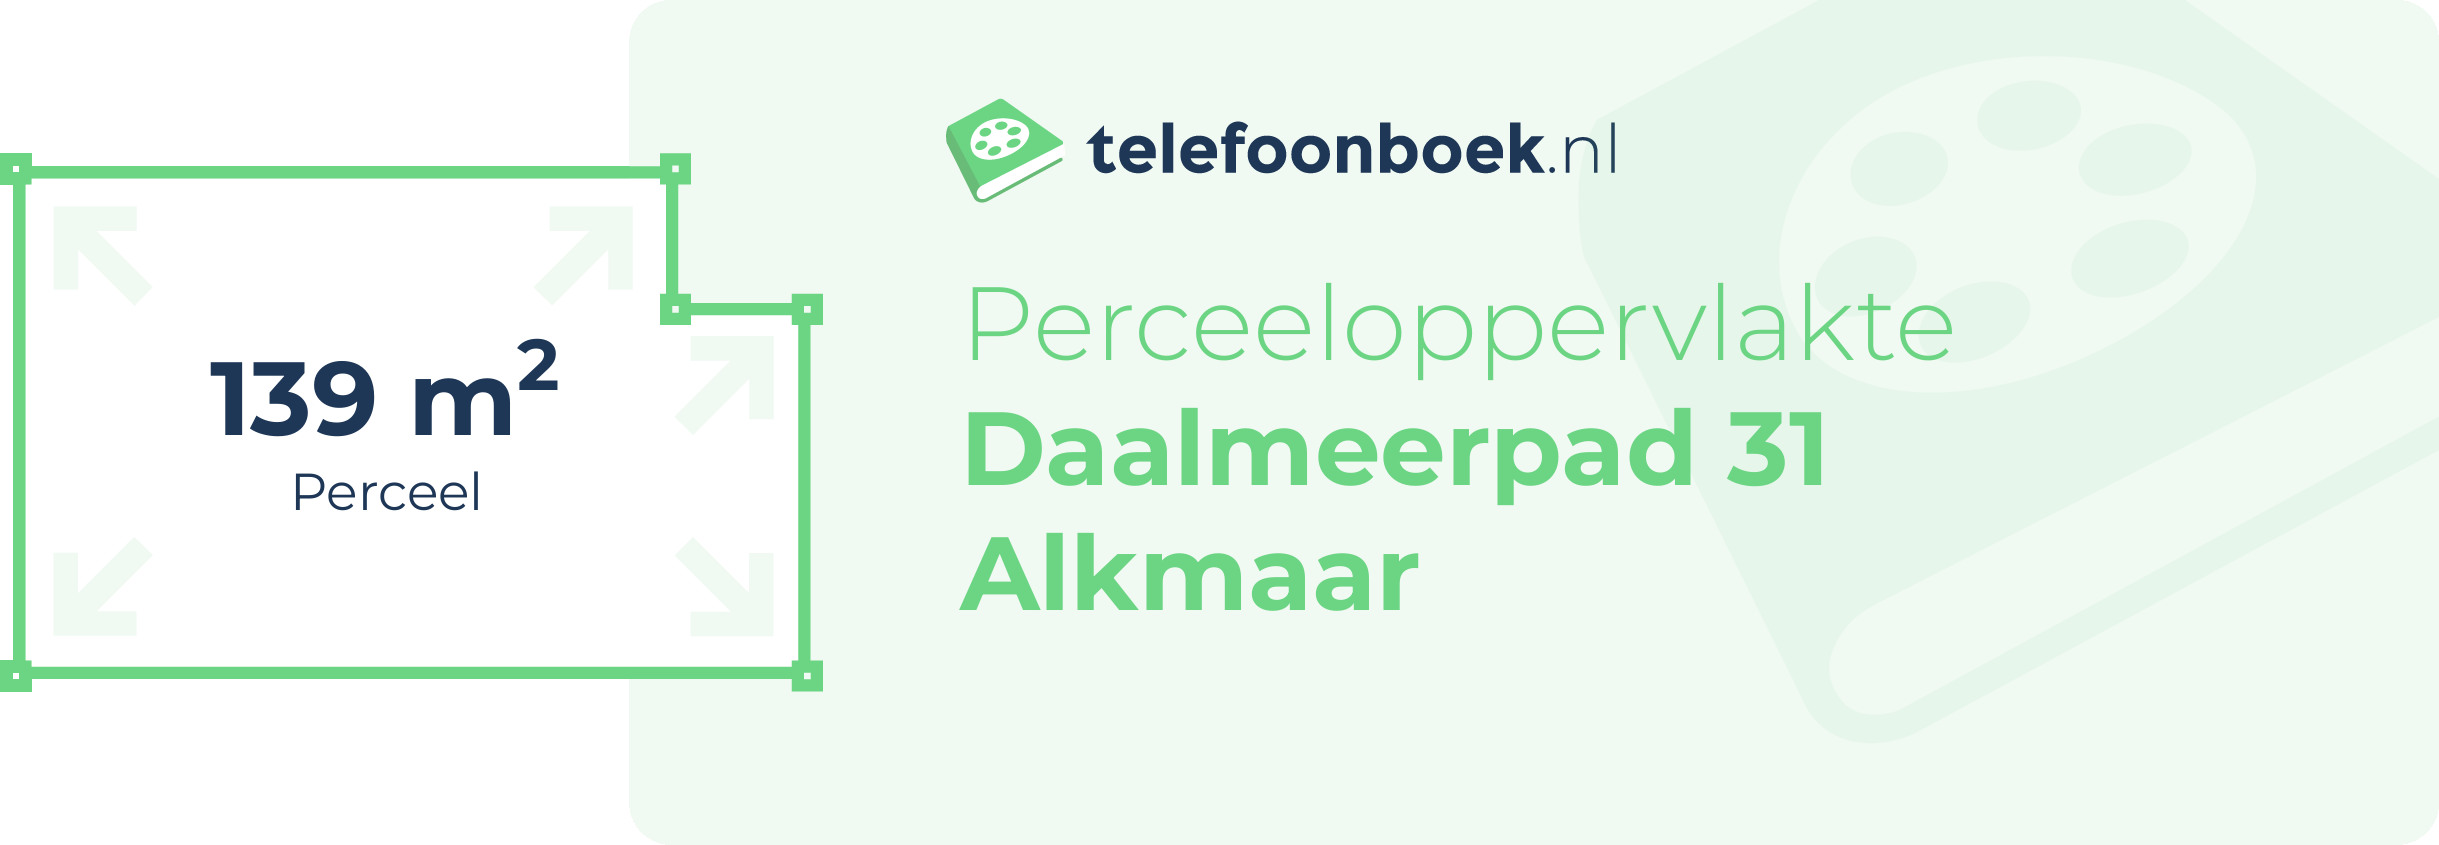 Perceeloppervlakte Daalmeerpad 31 Alkmaar